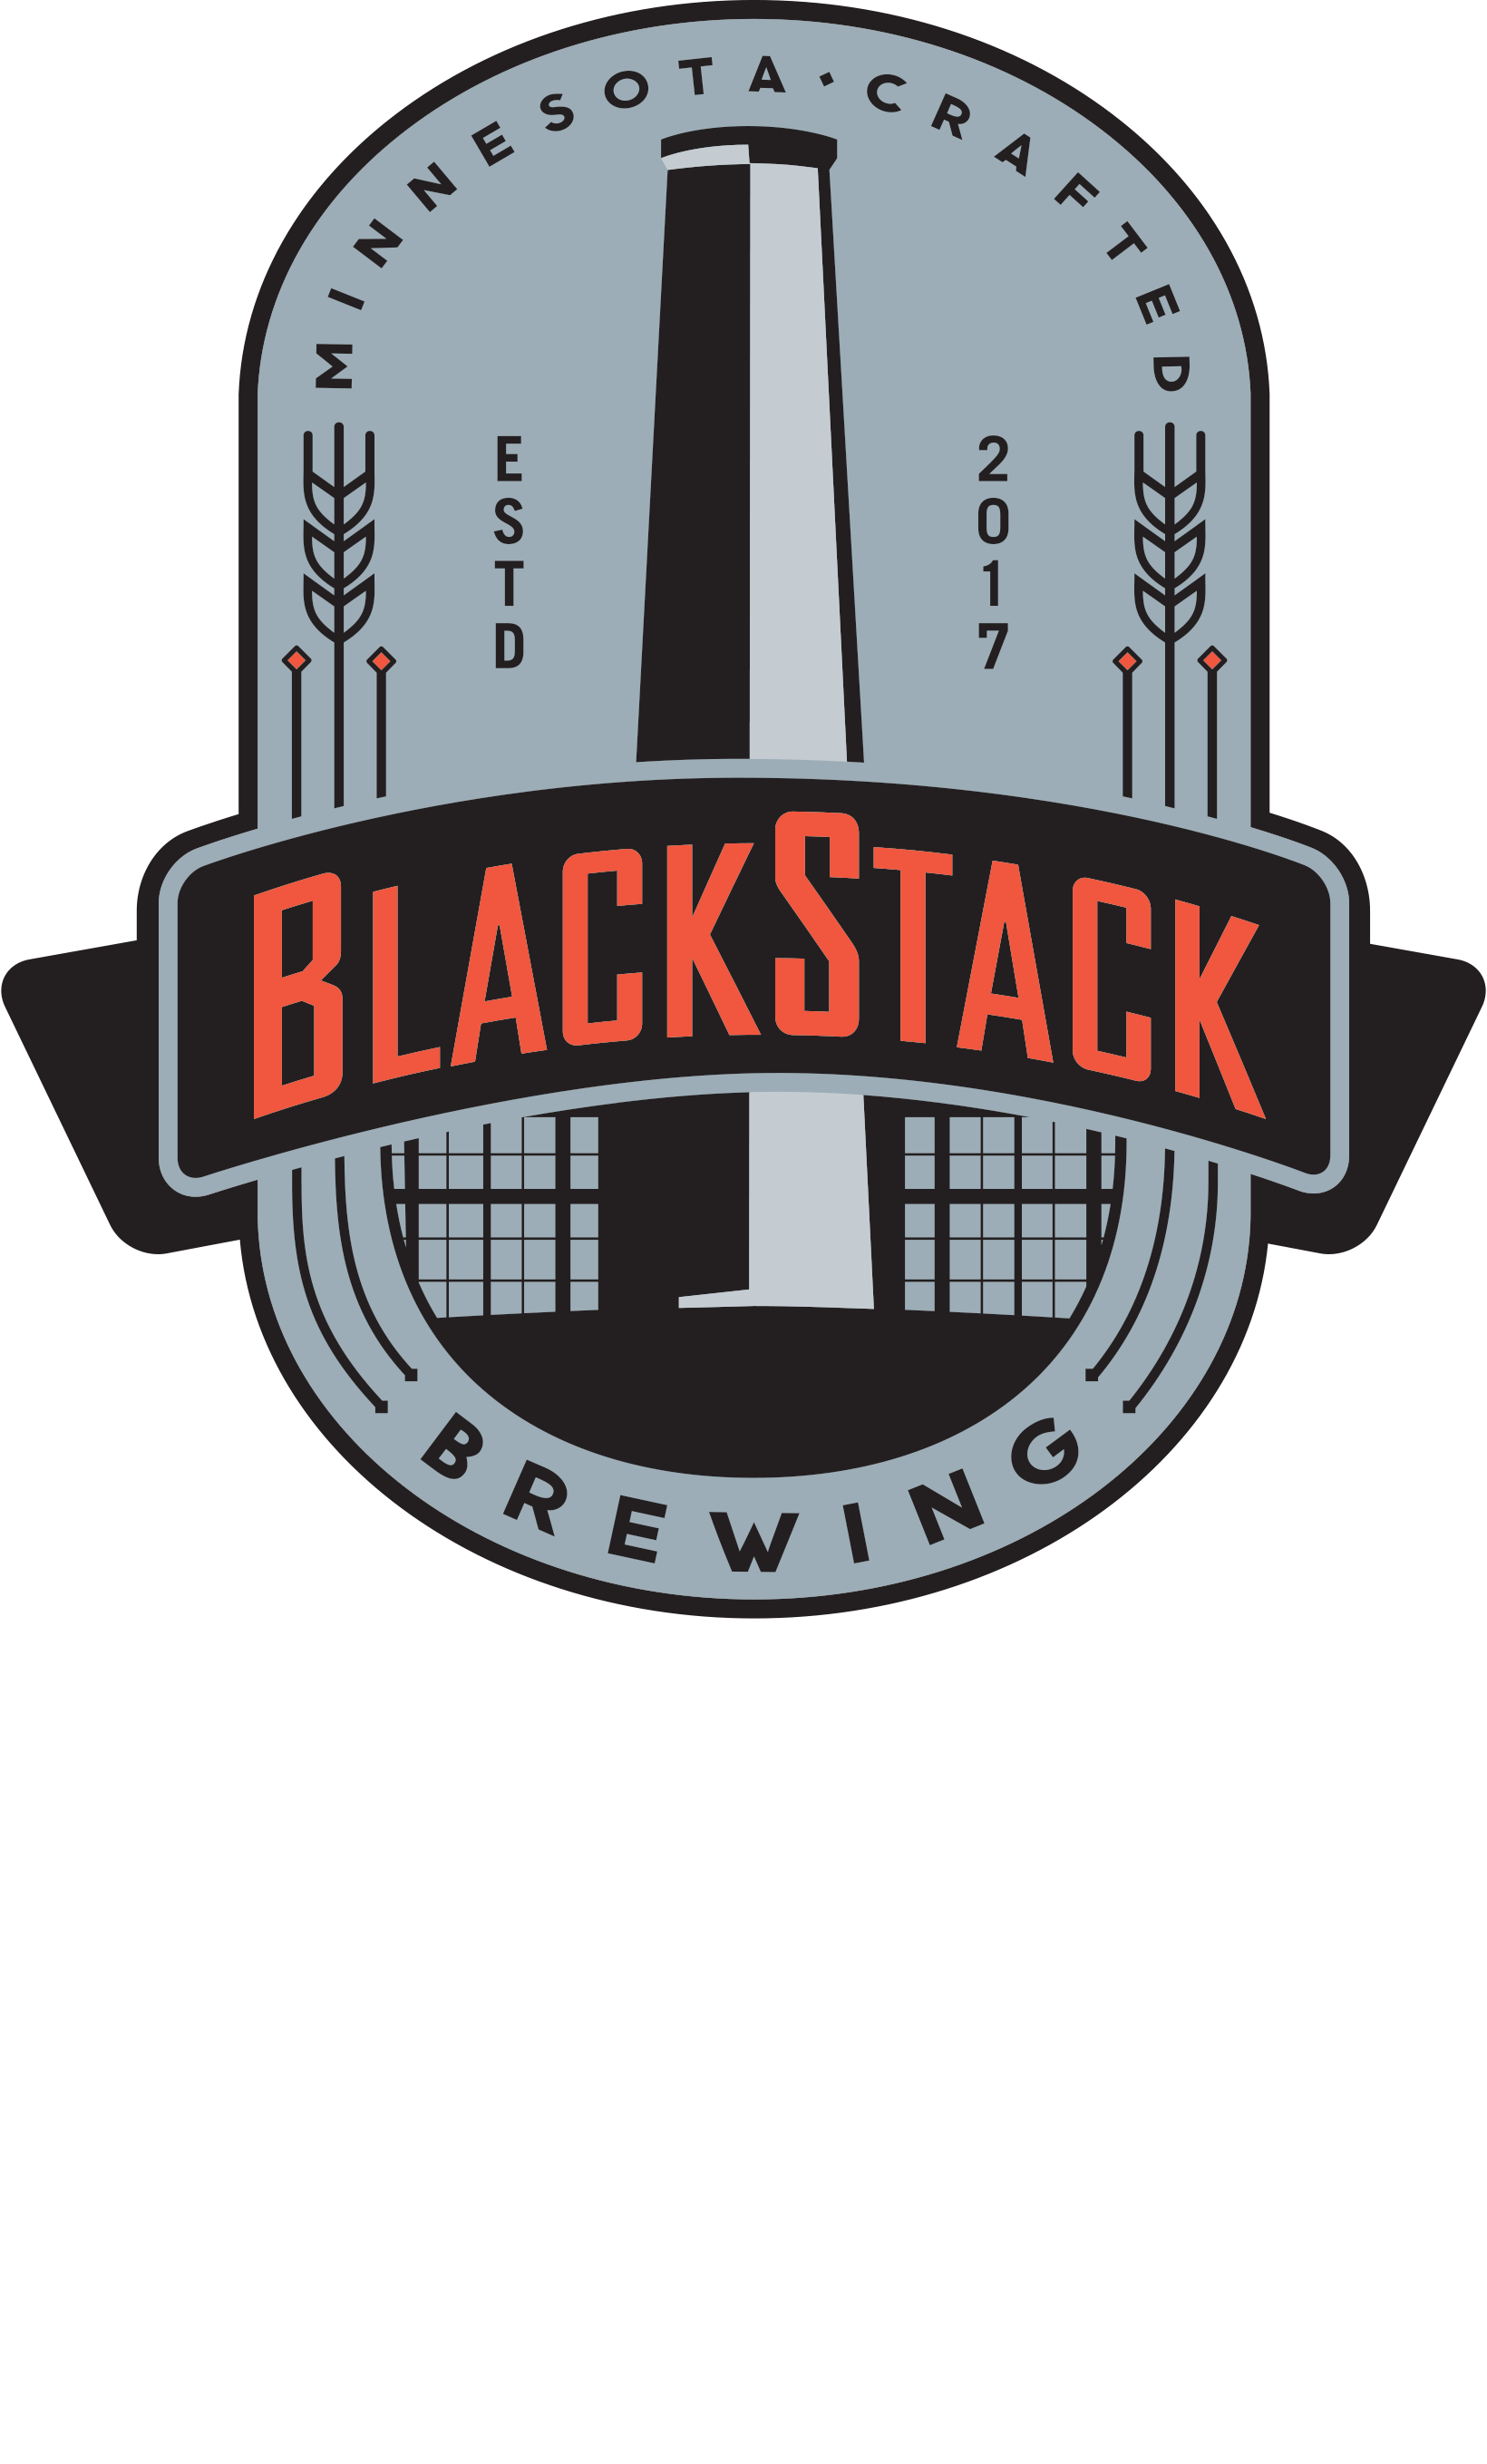 blackstack_brewery_logo_CMYK_4colors_v02FINAL_ (1) copy-1.png